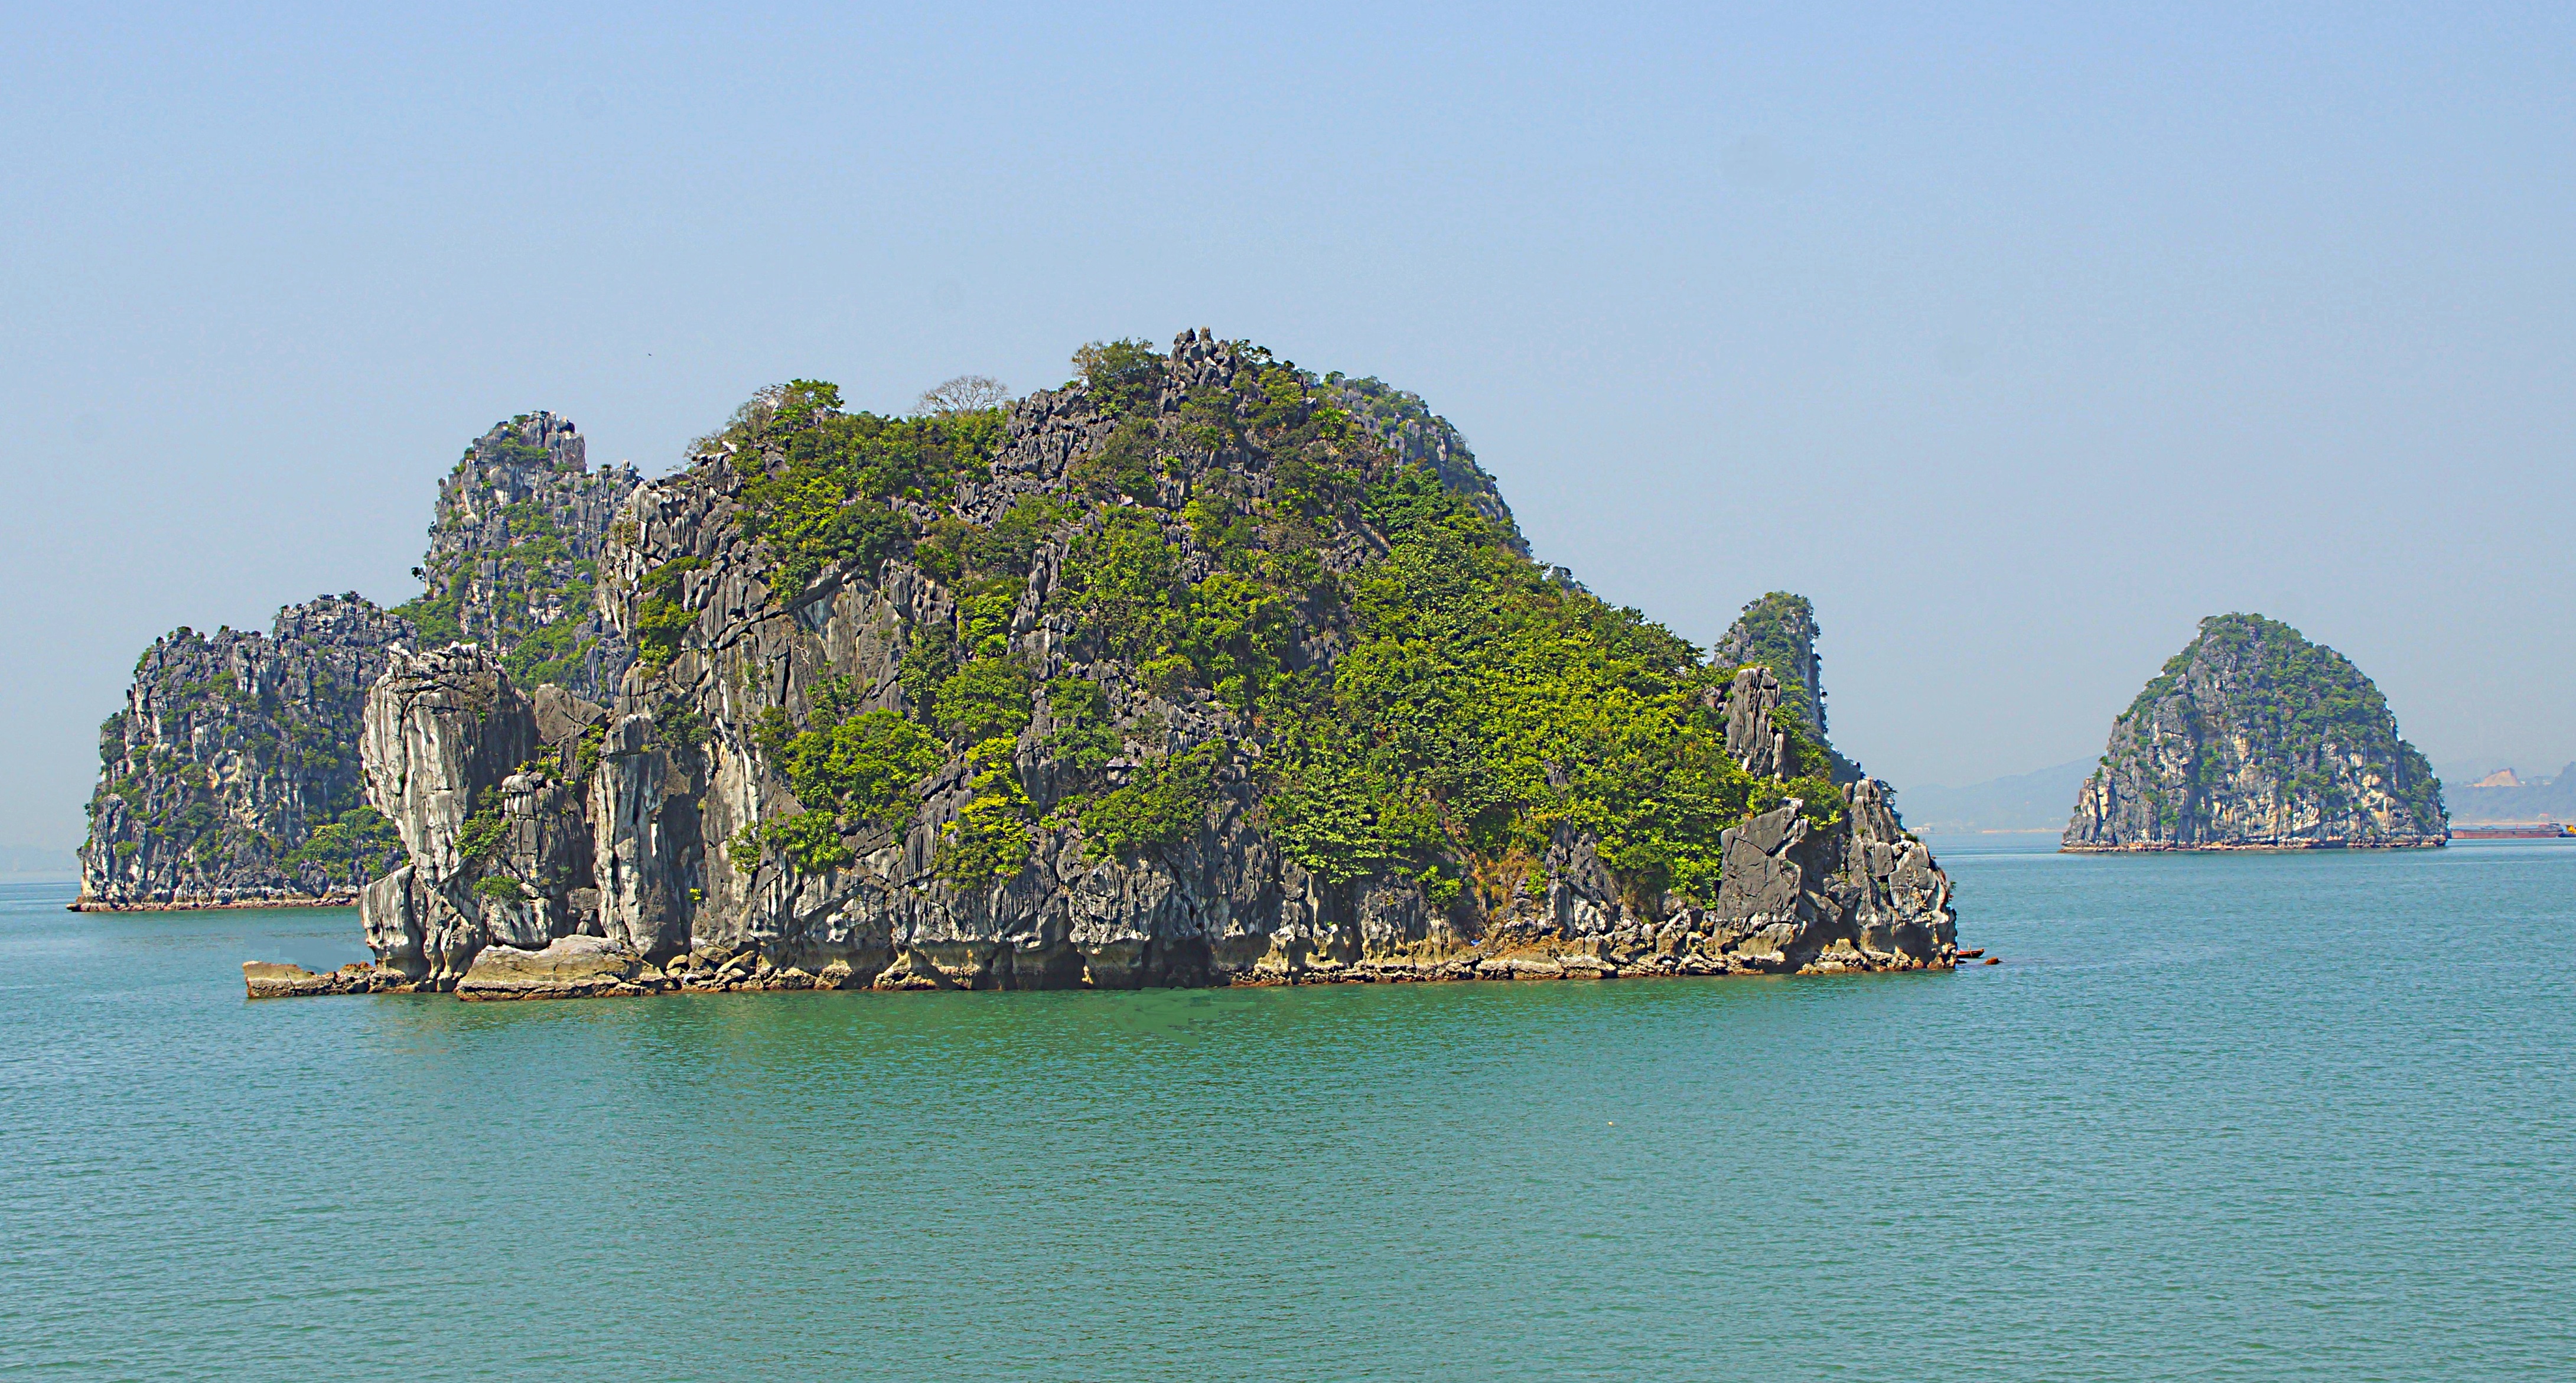 Скалистые острова бухты Халонг. Фото Морошкина В.В.